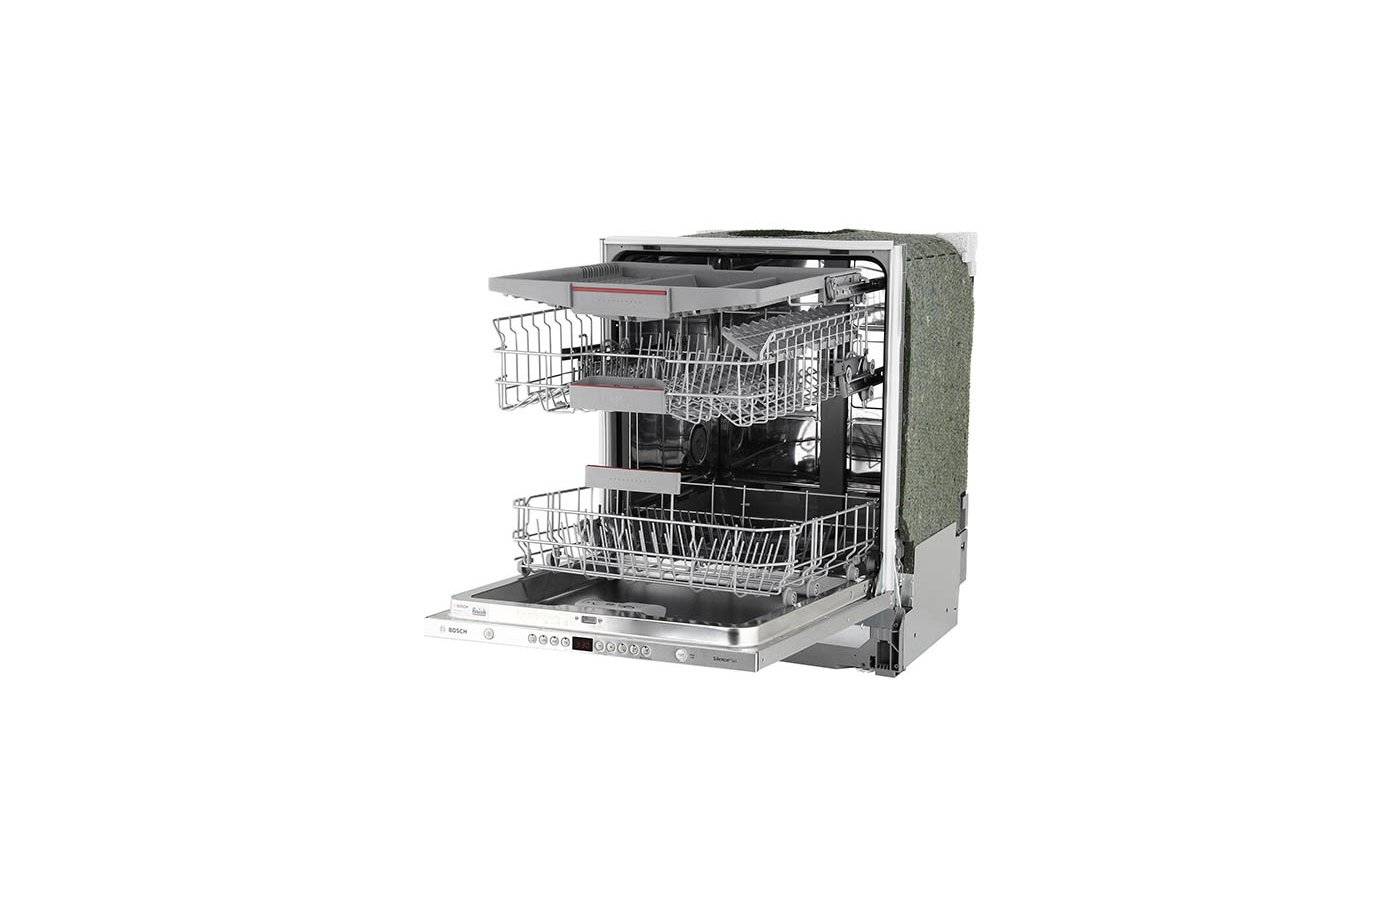 Посудомоечная машина bosch smv44kx00r. полновстраиваемая посудомоечная машина bosch smv 44 kx 00 r